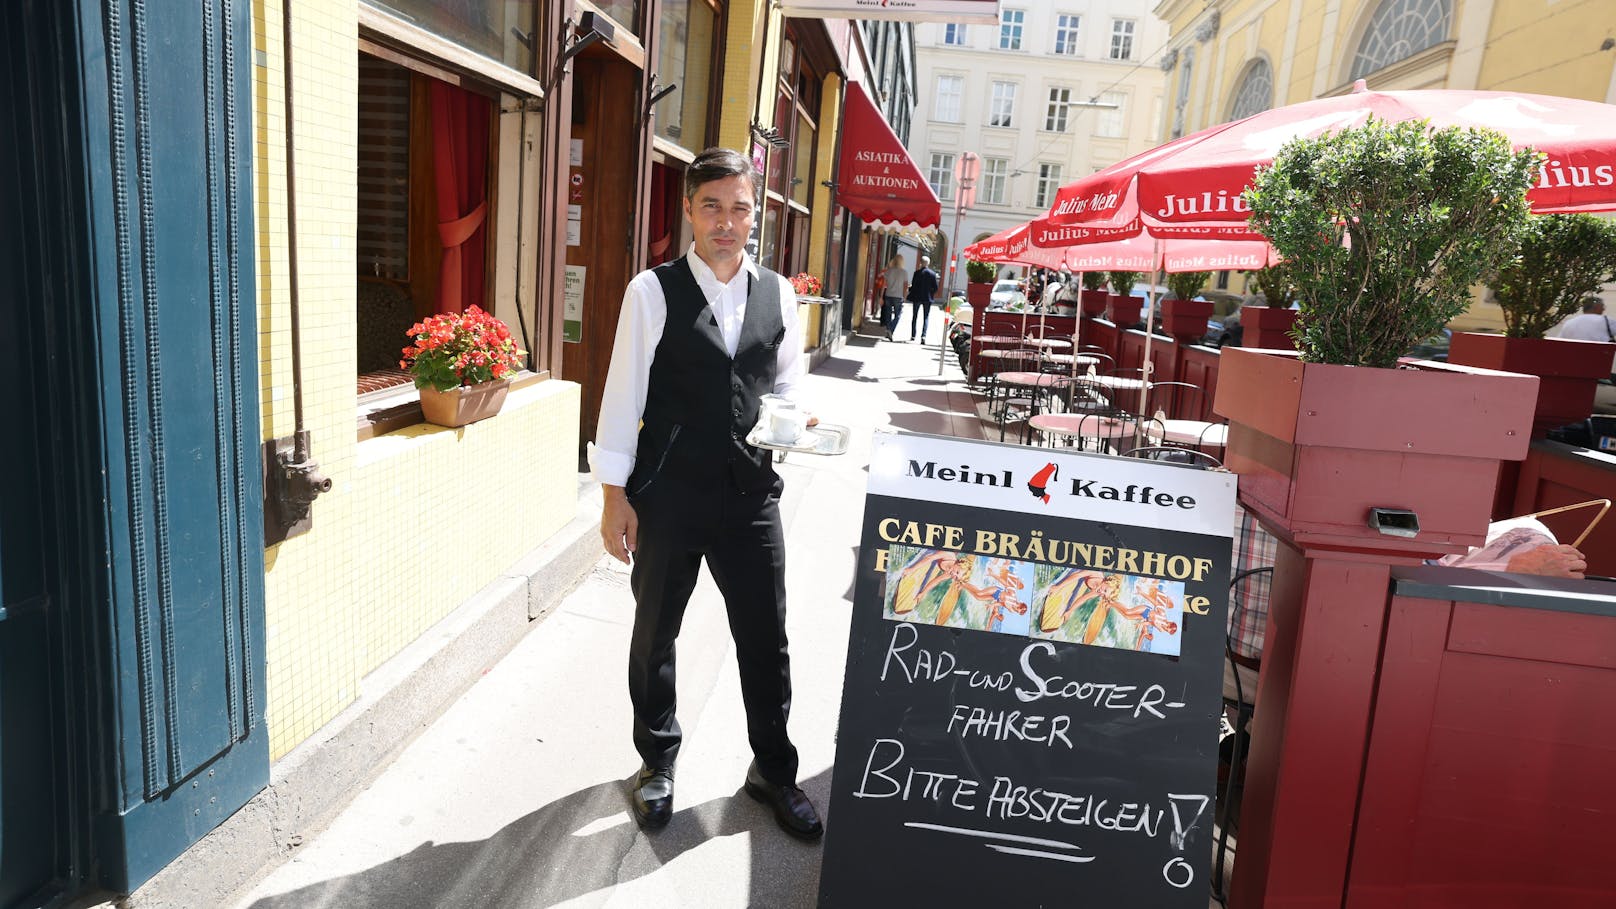 "Seit dem Hinweisschild gab es weniger gefährliche Vorfälle", erzählt der Kellner aus dem Café Bräunerhof.&nbsp;